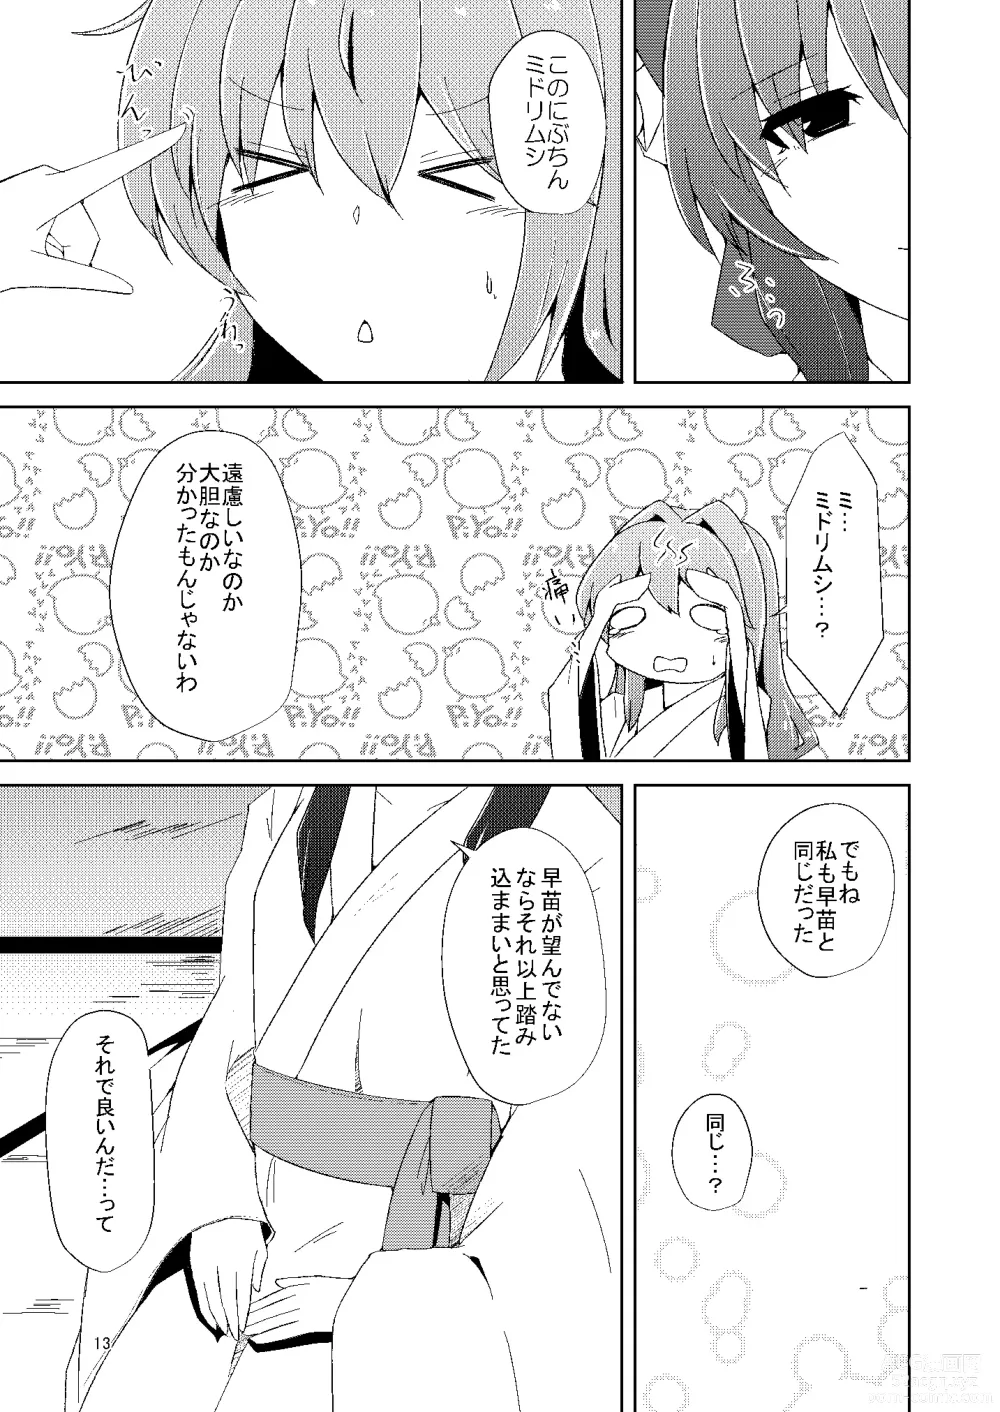 Page 12 of doujinshi Onaji desu ne